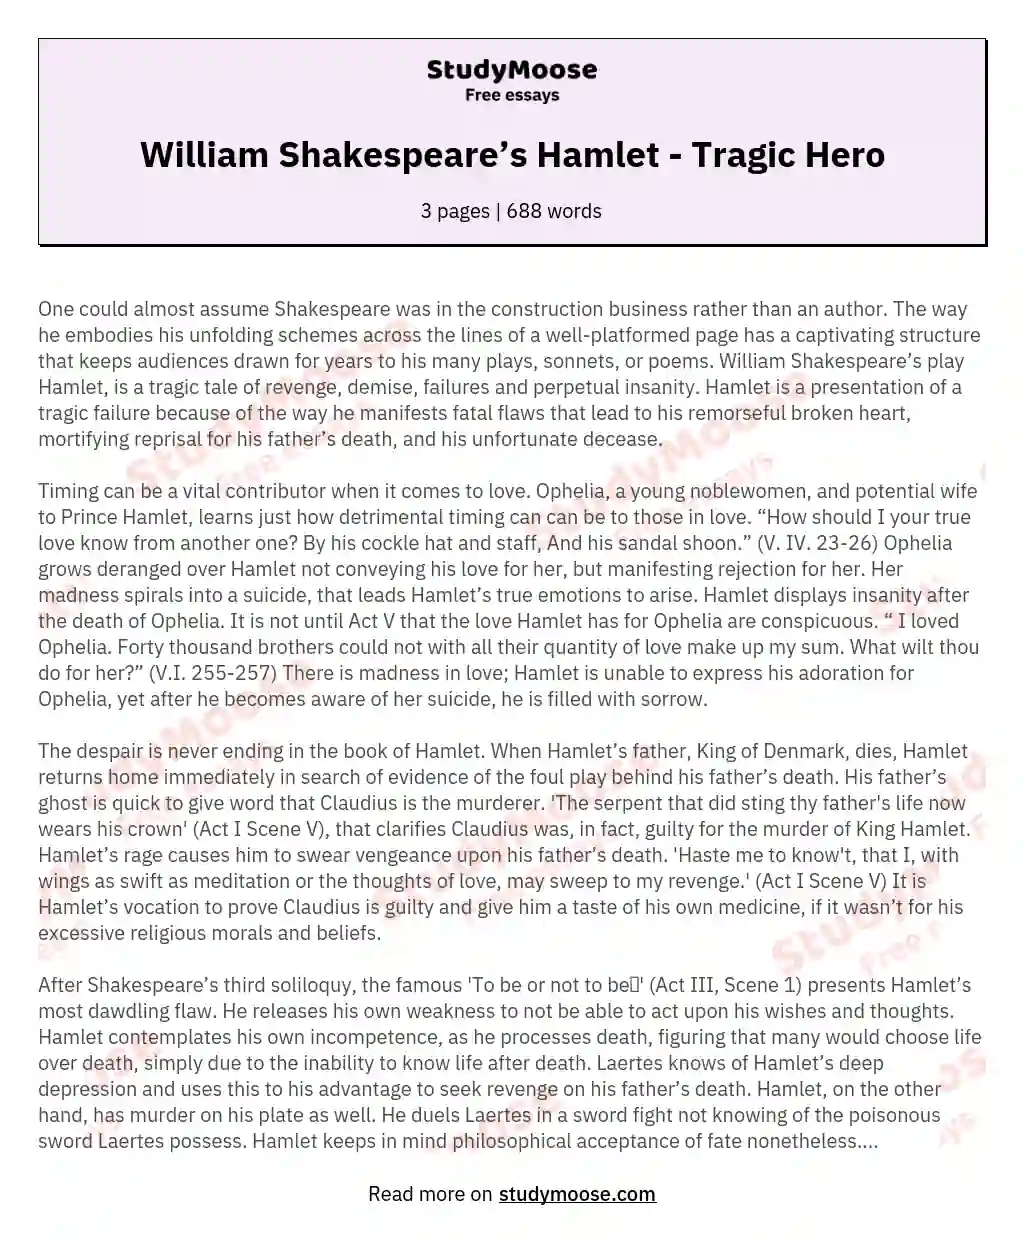 William Shakespeare’s Hamlet - Tragic Hero essay